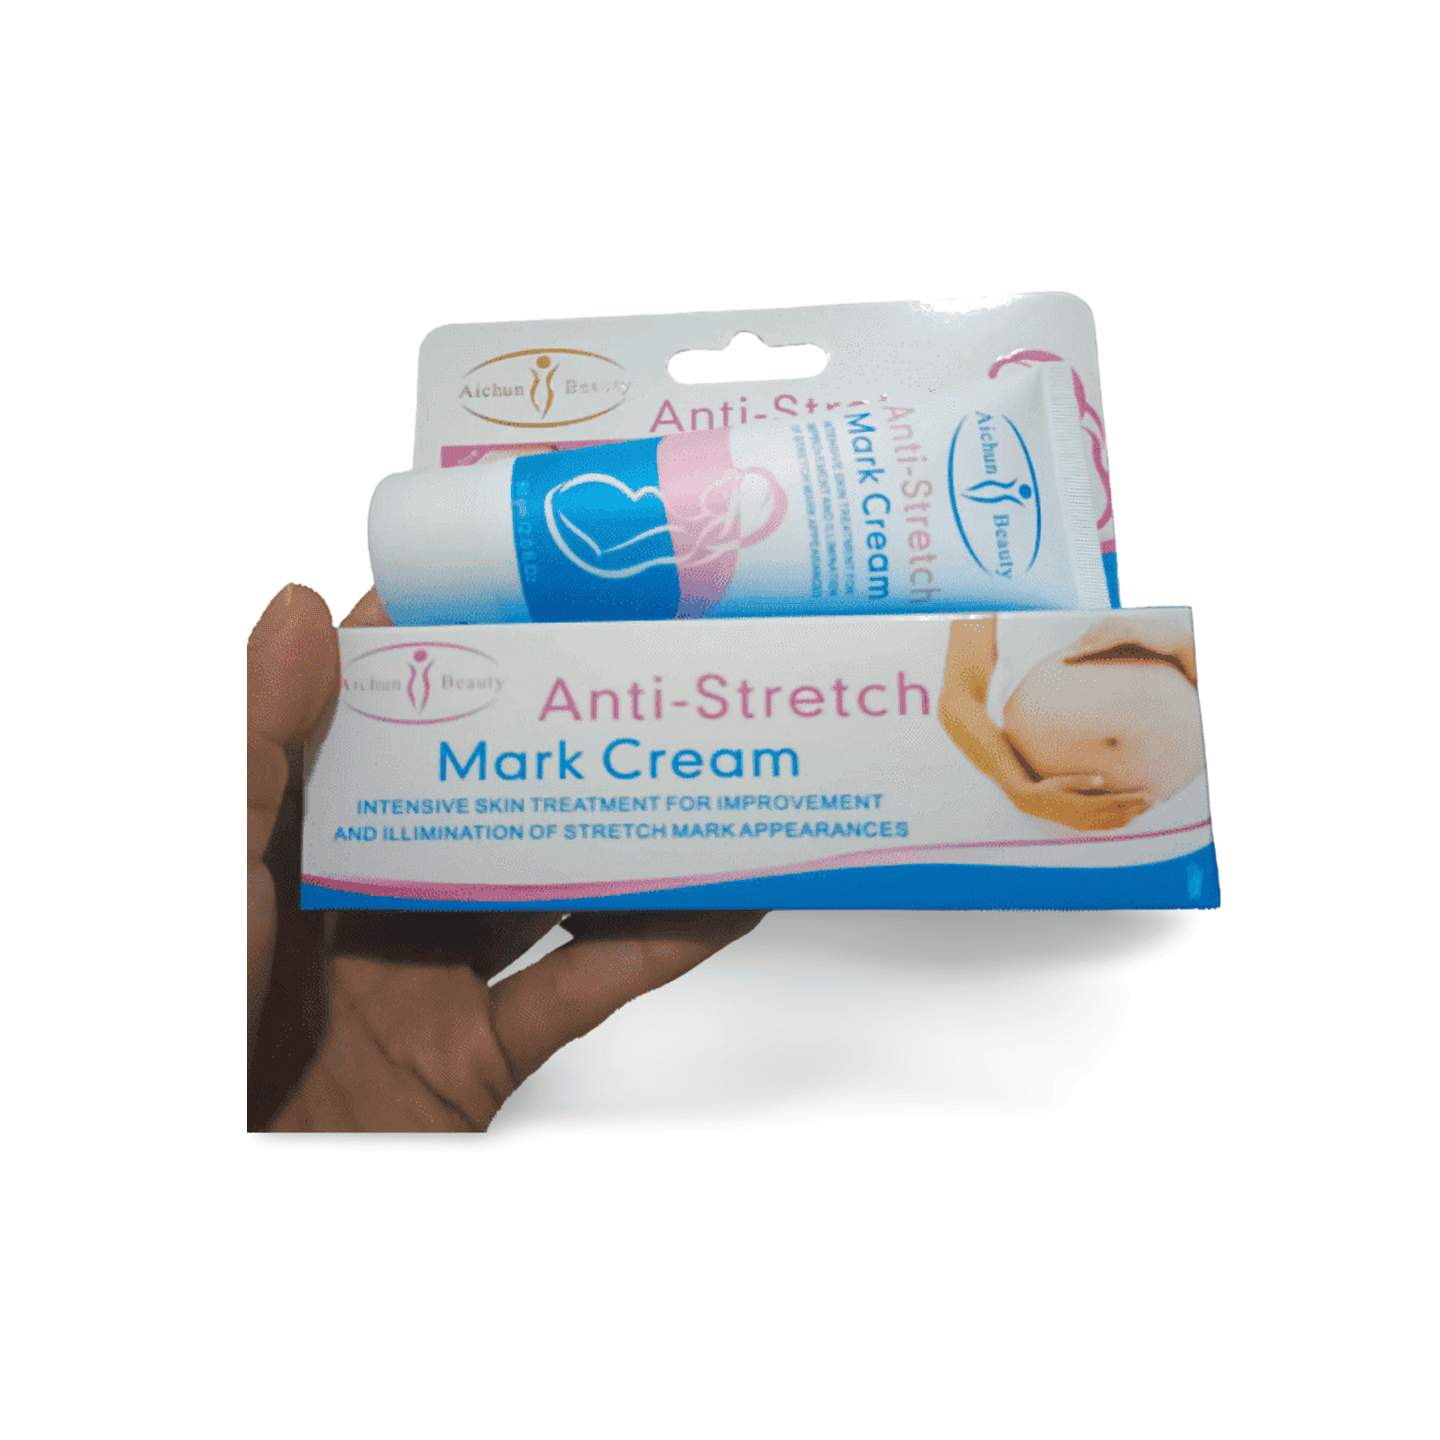 Anti Stretch Mark Cream In Pakistan